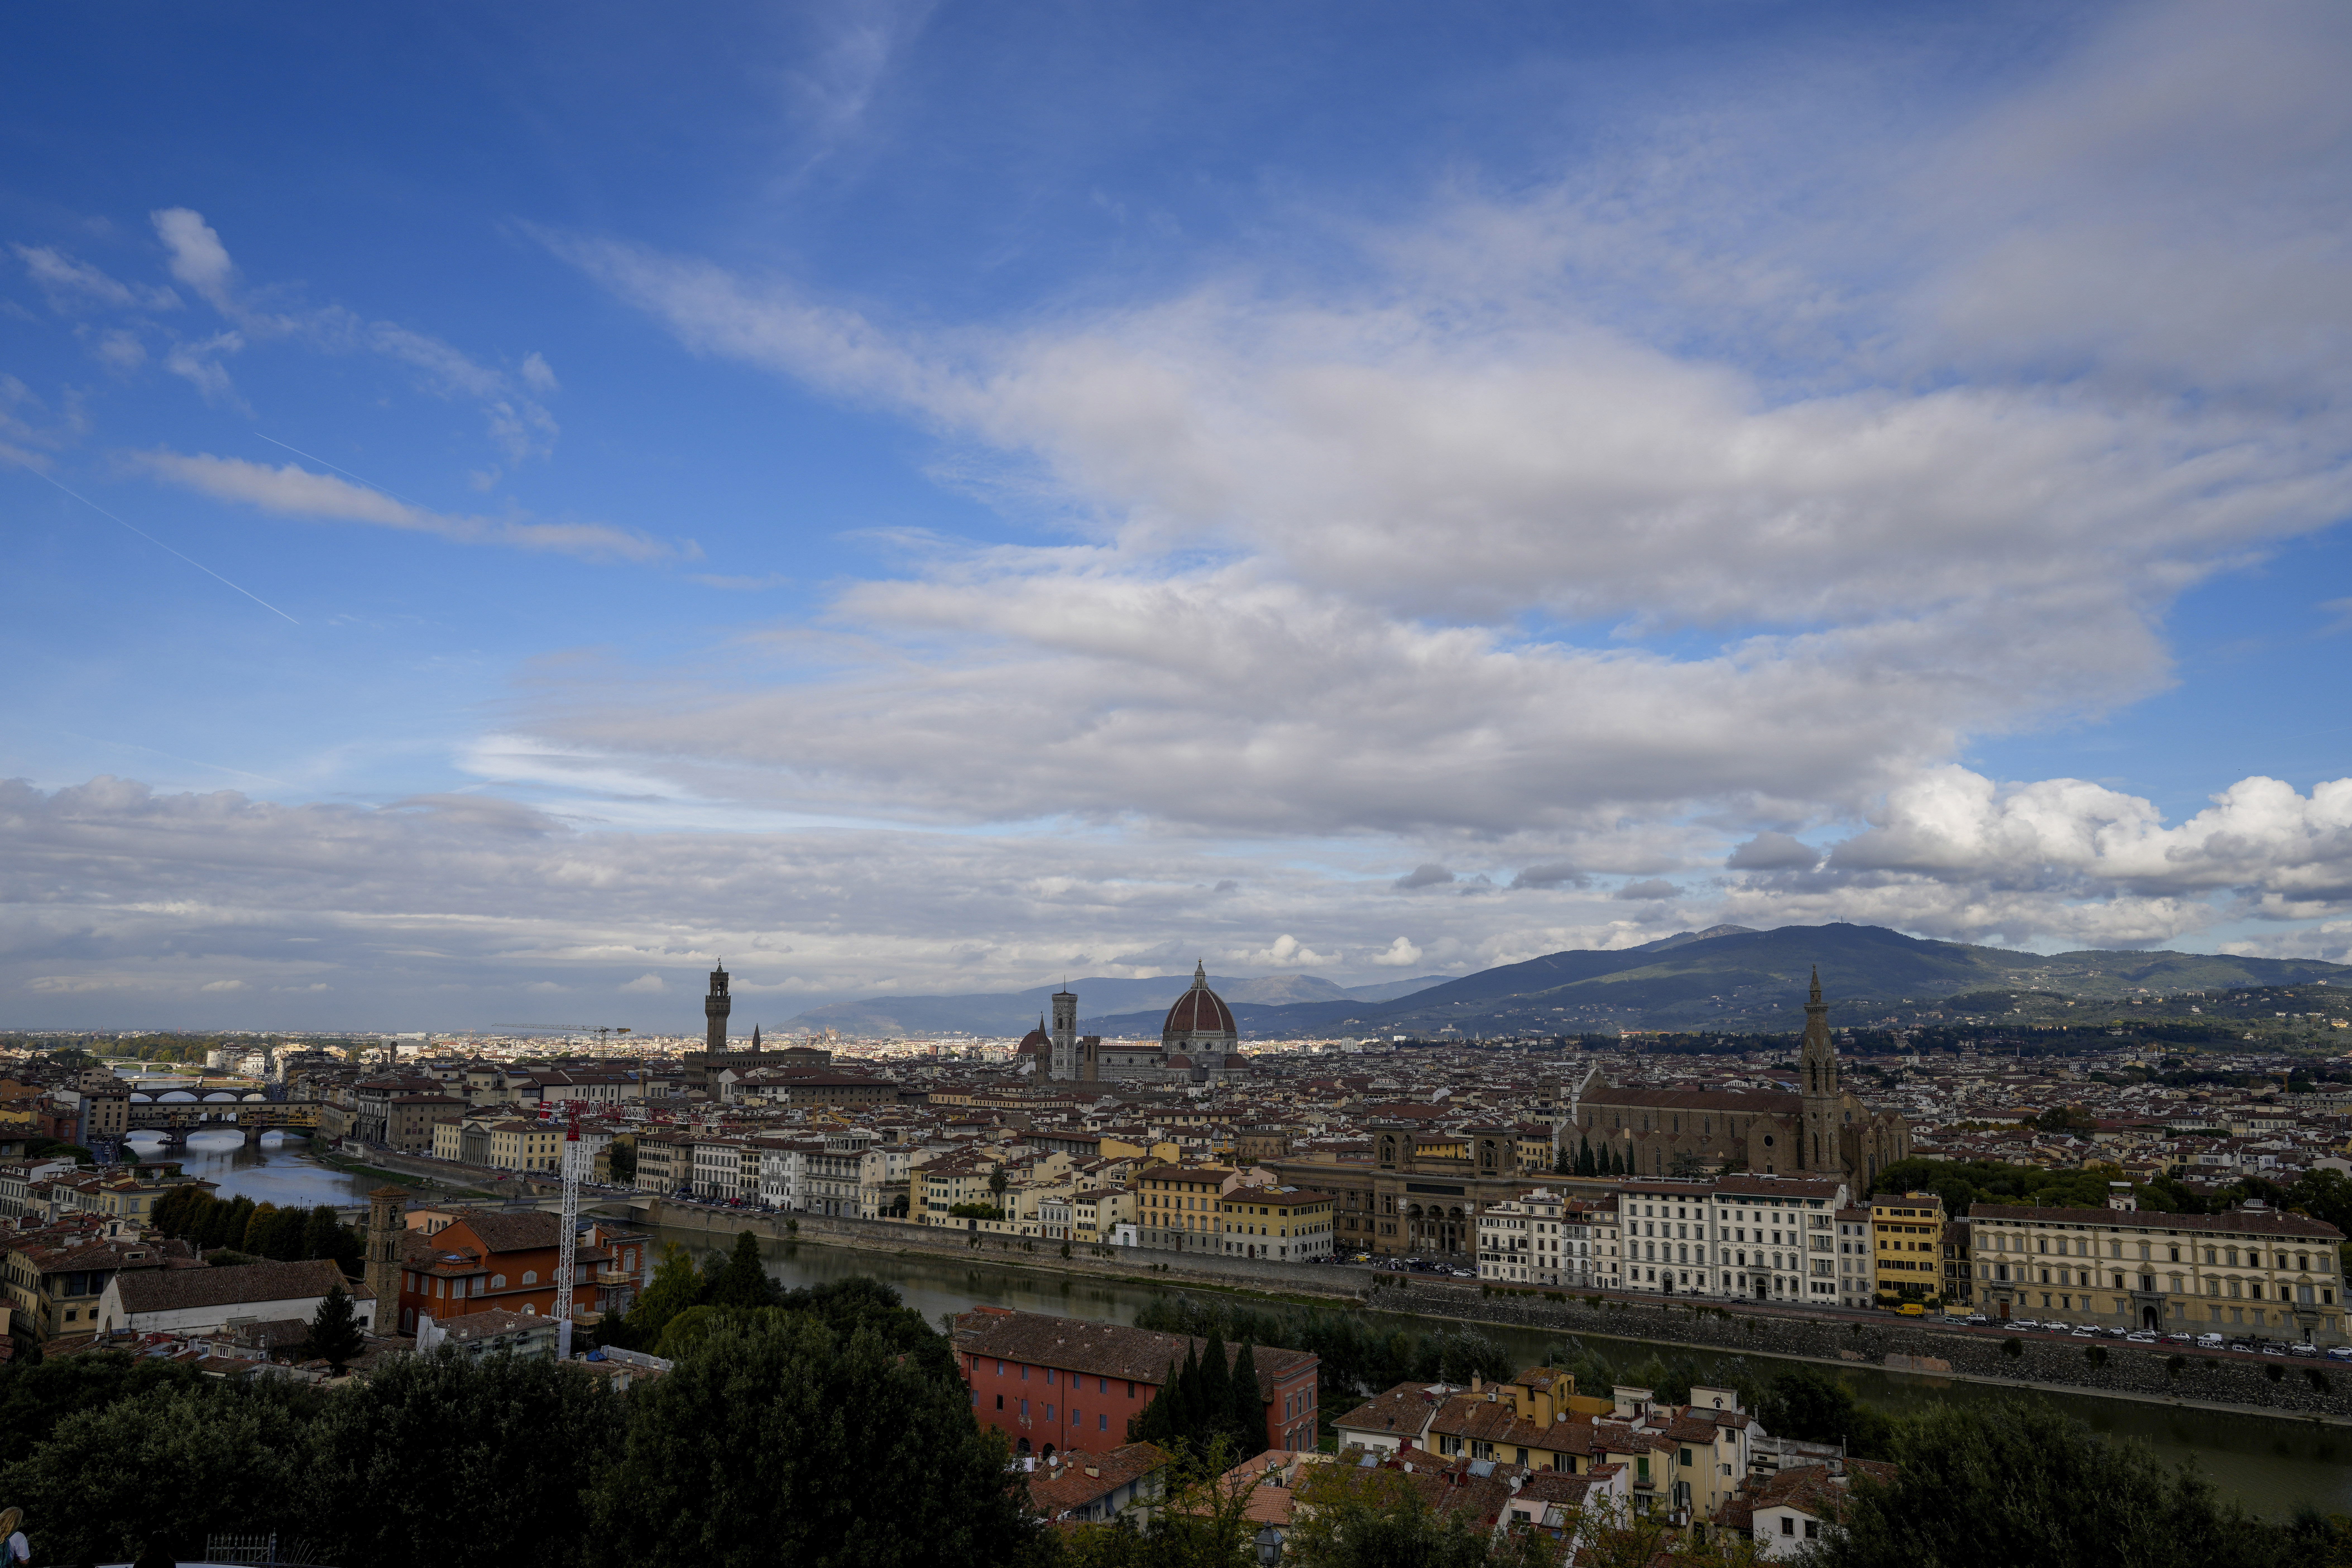 Φλωρεντία: Απαγορεύει τις νέες βραχυχρόνιες μισθώσεις κατοικιών στο ιστορικό κέντρο